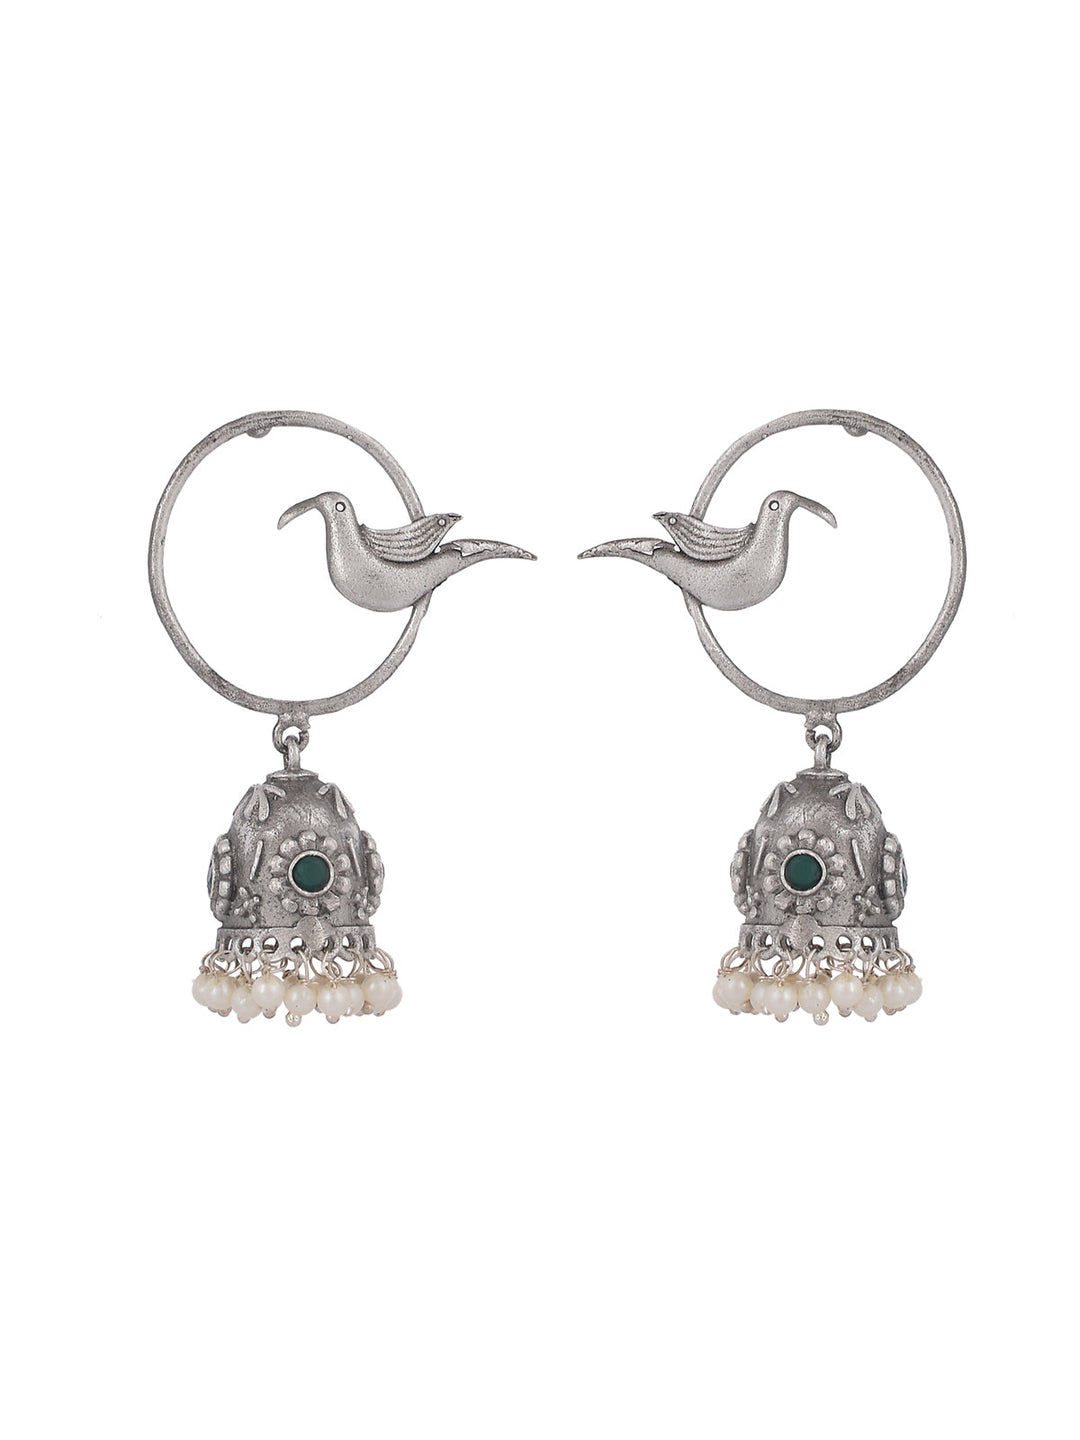 Oxodise earrings